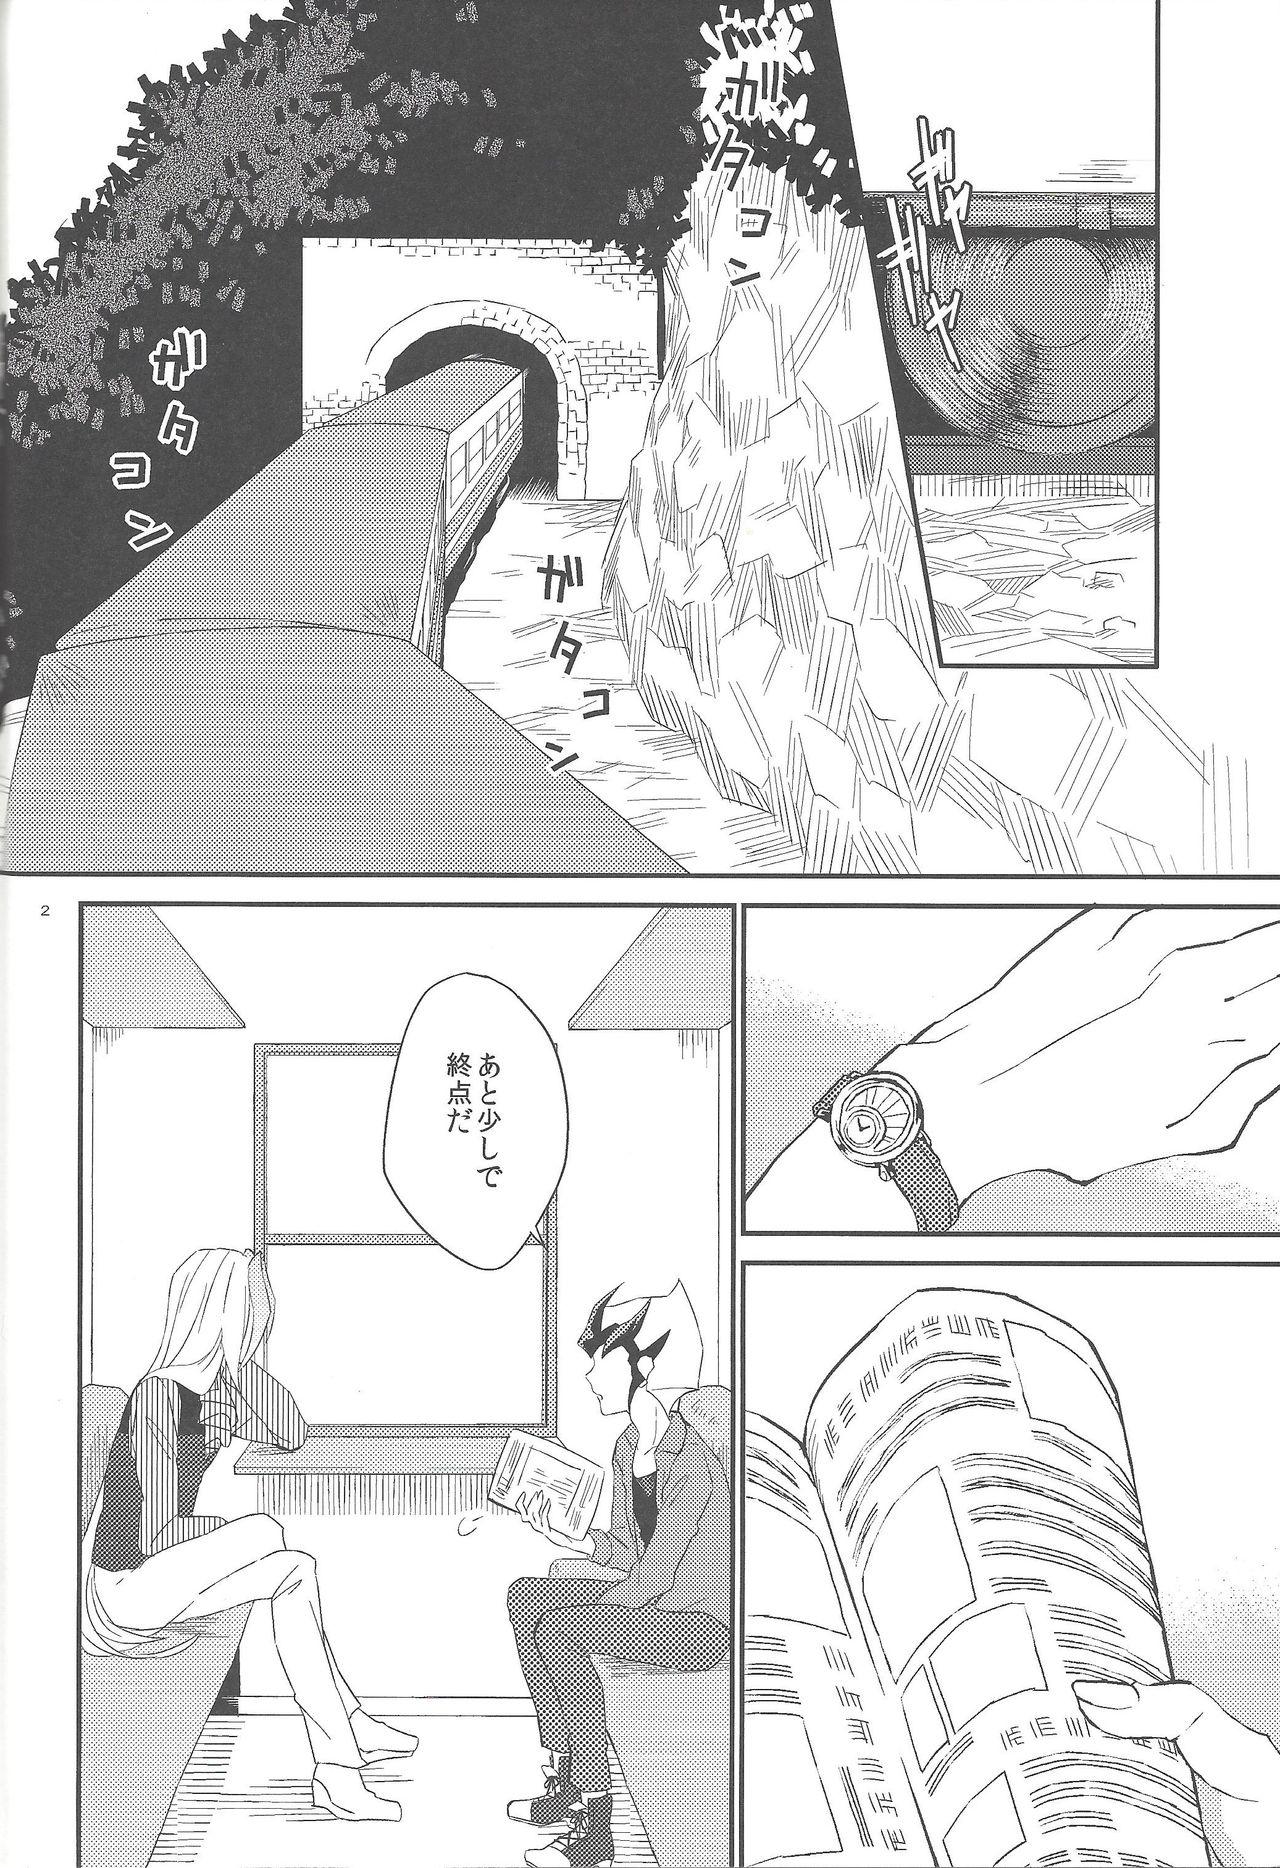 Hidden Garansasu no saku oka e - Yu-gi-oh zexal Big Dick - Page 3